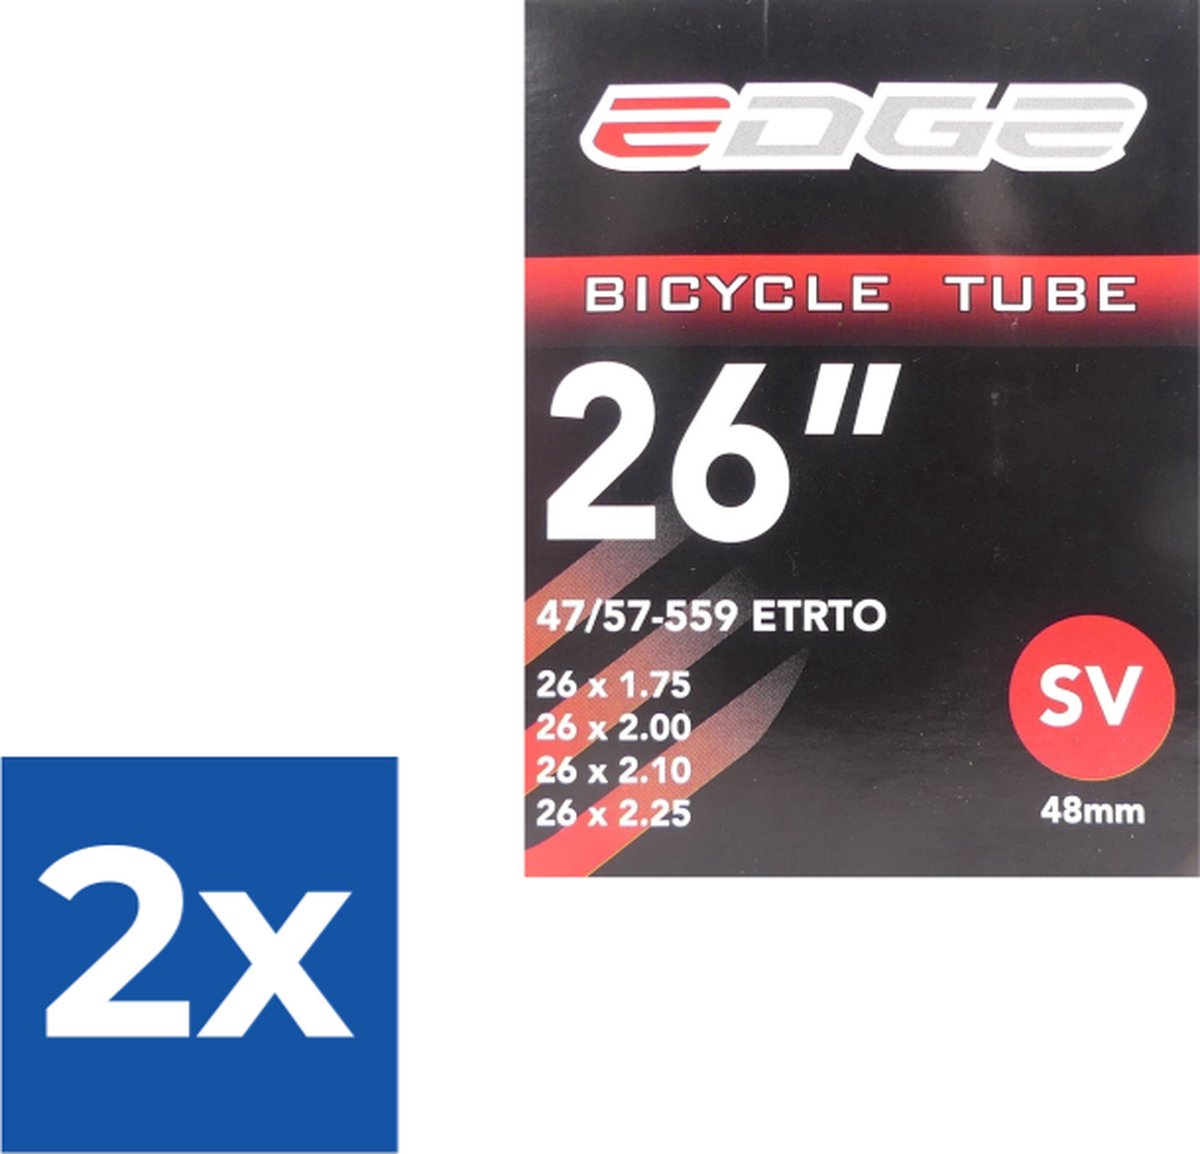 Binnenband Edge 26 (47/57-559) - SV48mm - Voordeelverpakking 2 stuks